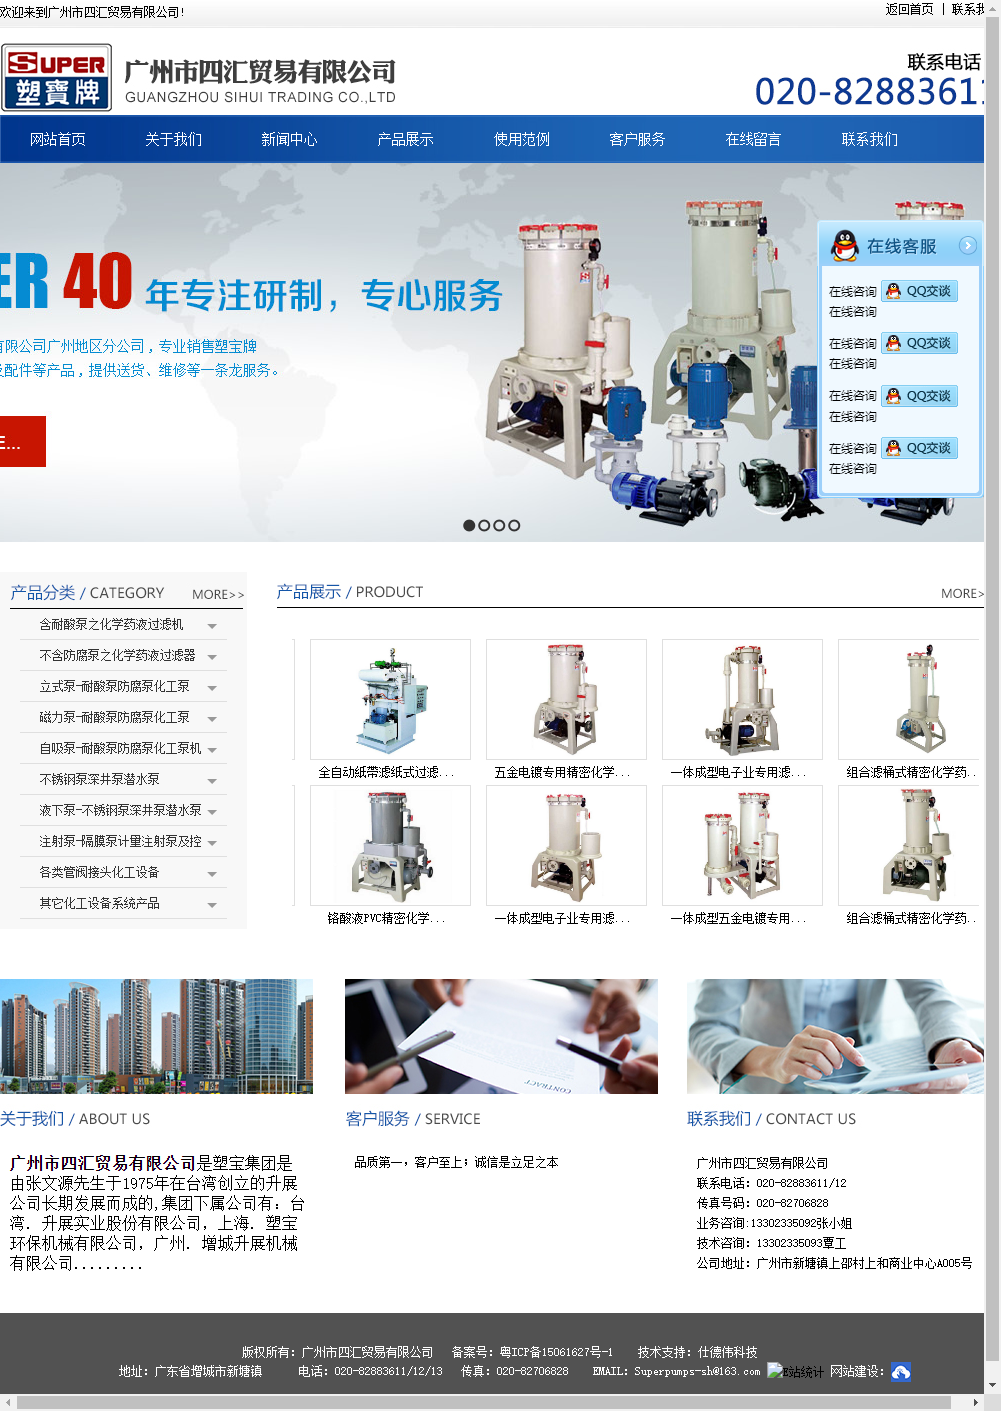 广州市四汇贸易有限公司网站案例